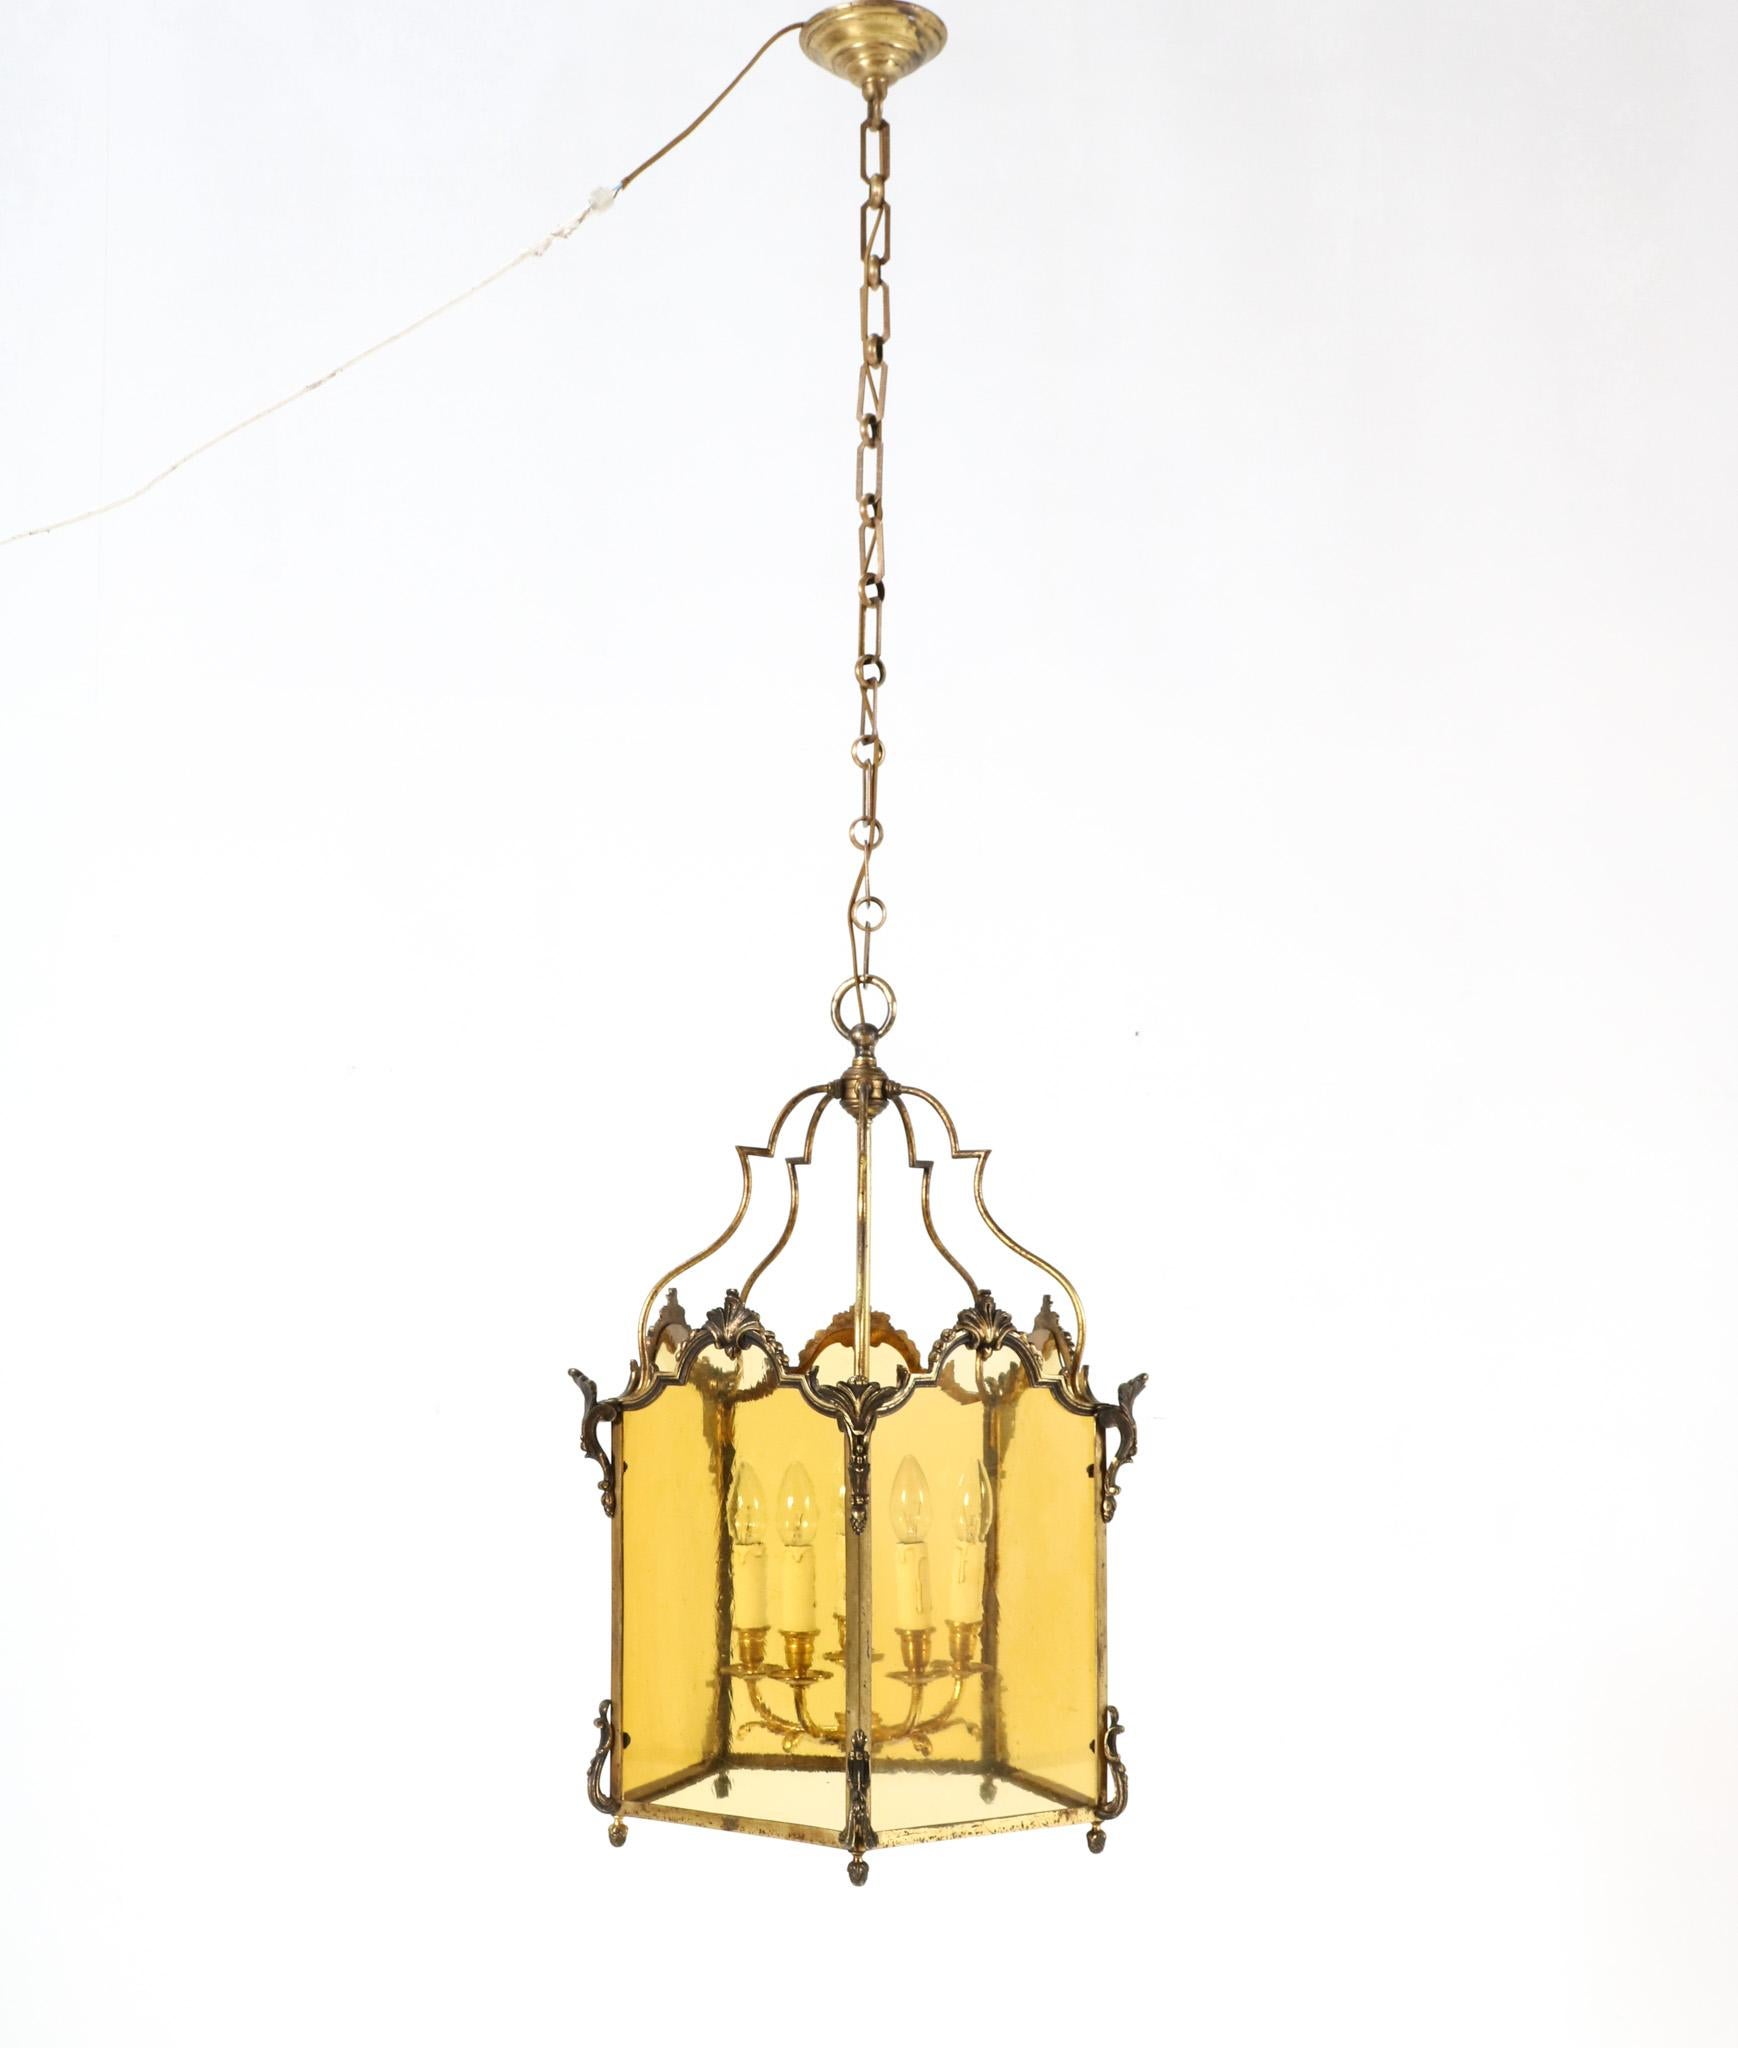 Magnifique et élégante lanterne de hall de style Louis XV du 19ème siècle.
Un design français saisissant des années 1870.
Cadre original en bronze doré à crête de coquille avec cinq panneaux originaux en verre soufflé à la main de couleur jaune.
À